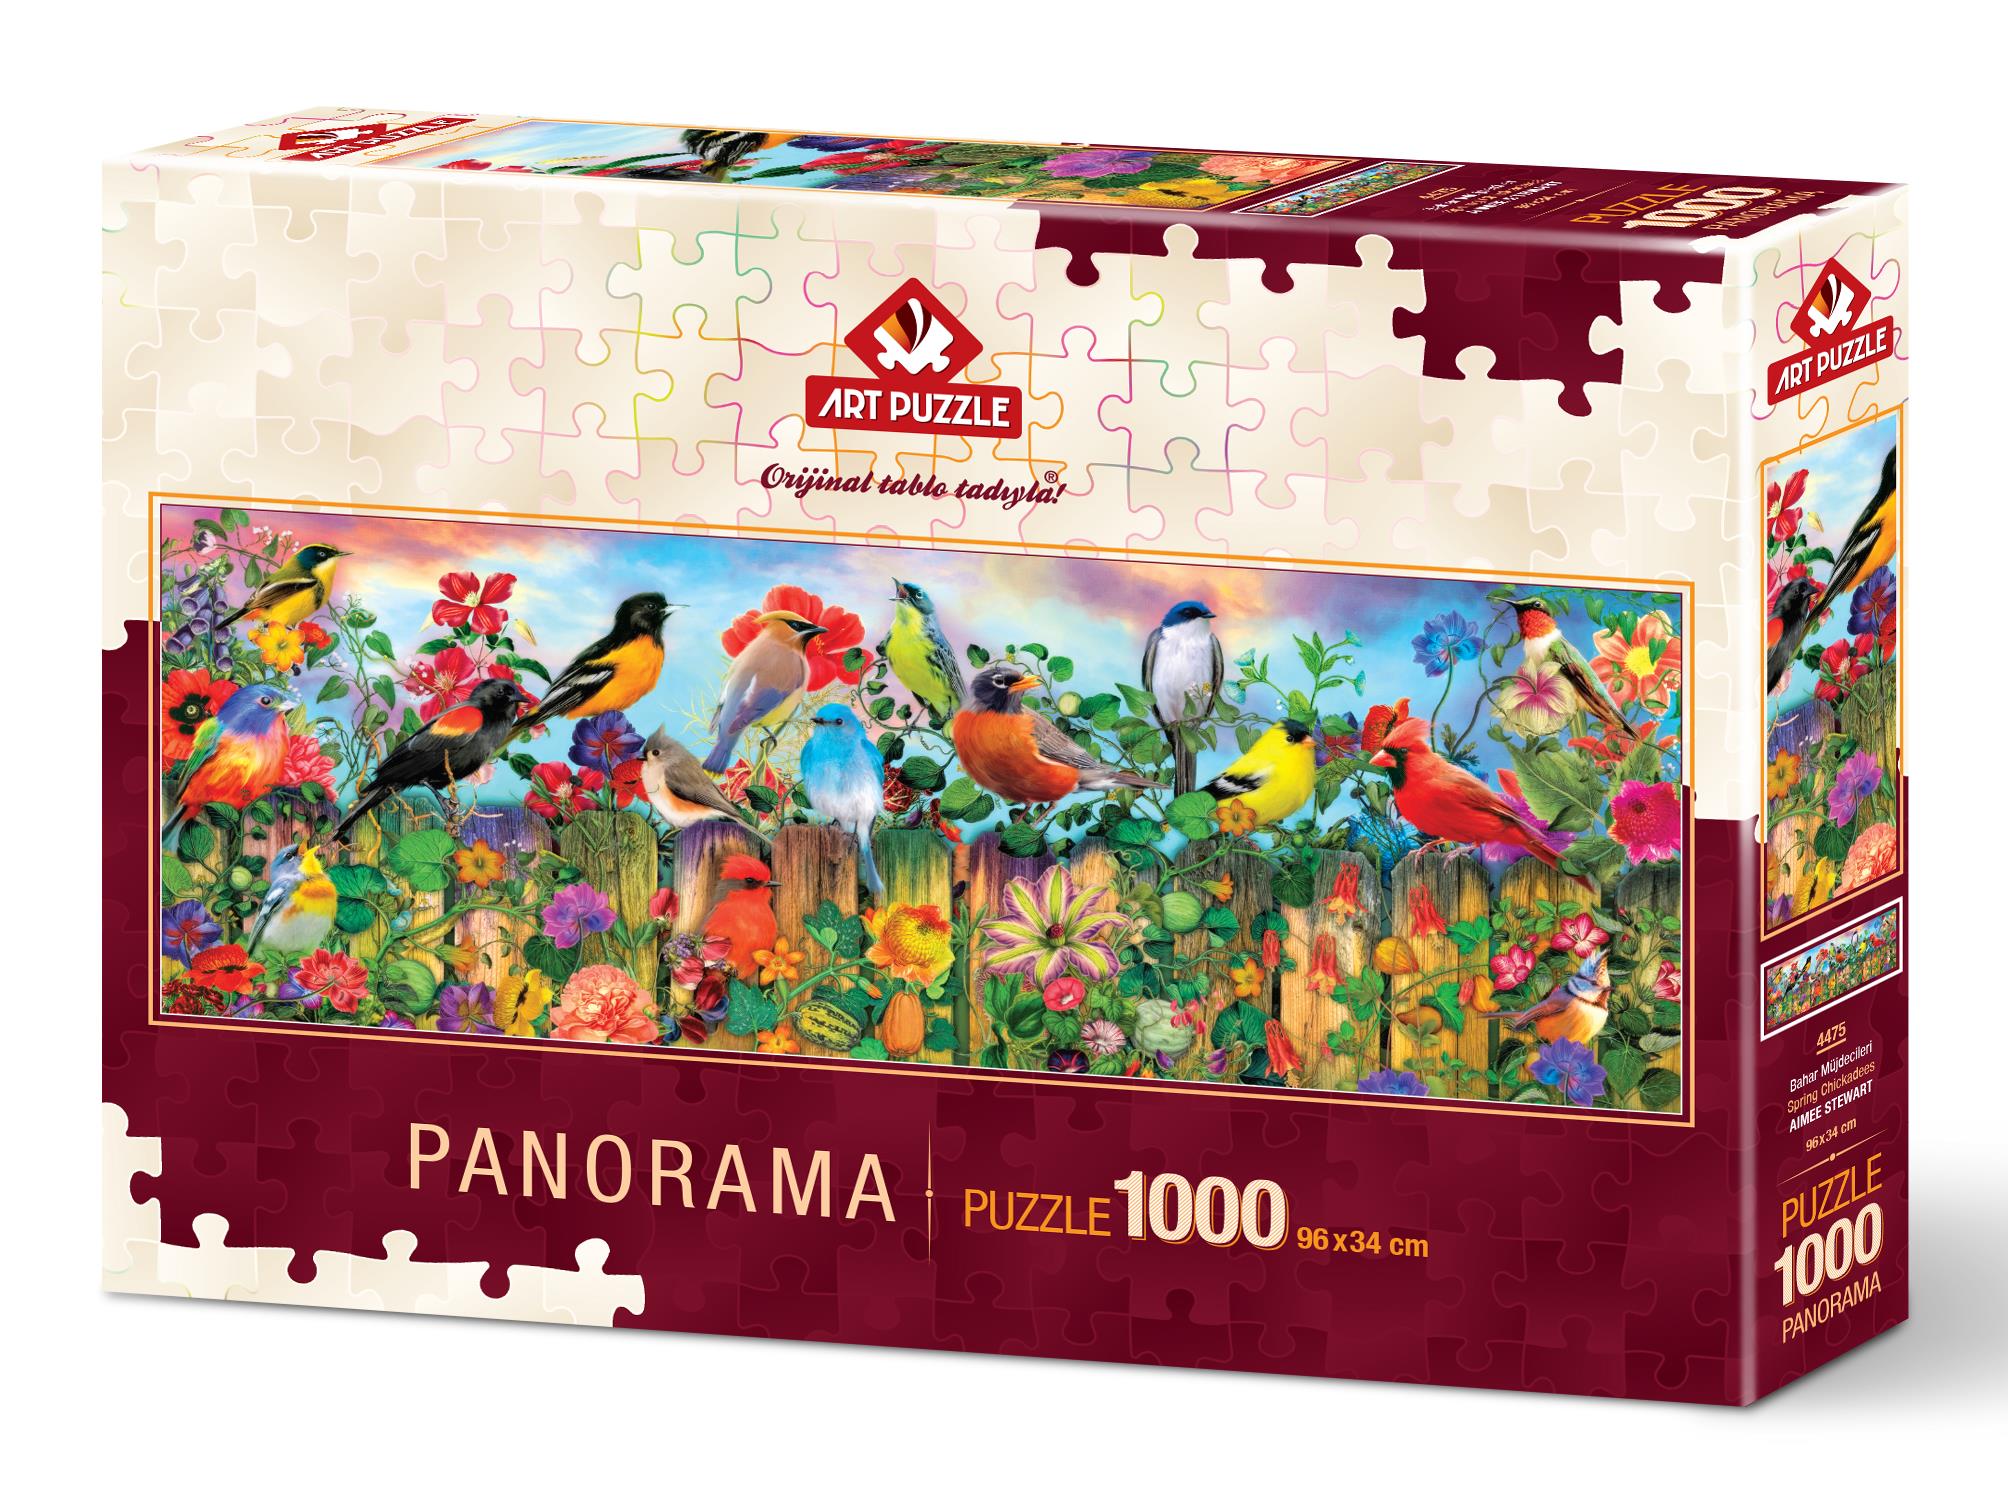 Art Puzzle 4475 Bahar Müjdecileri 1000 Parça Panorama Puzzle